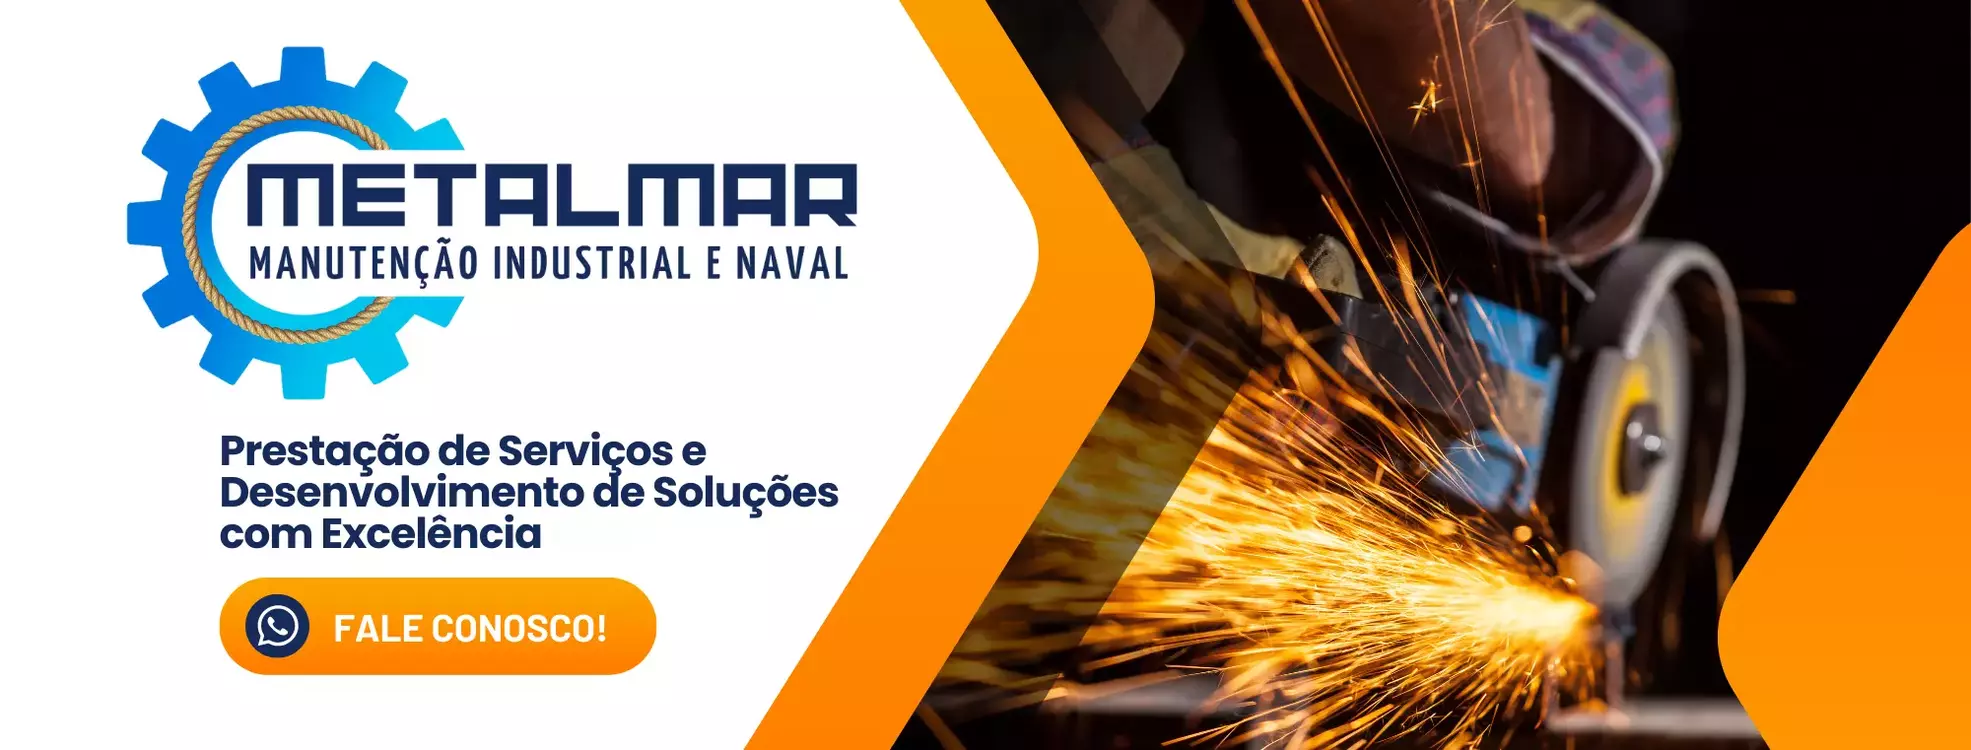 MetalMar Manutenção Mecânica Industrial e Naval